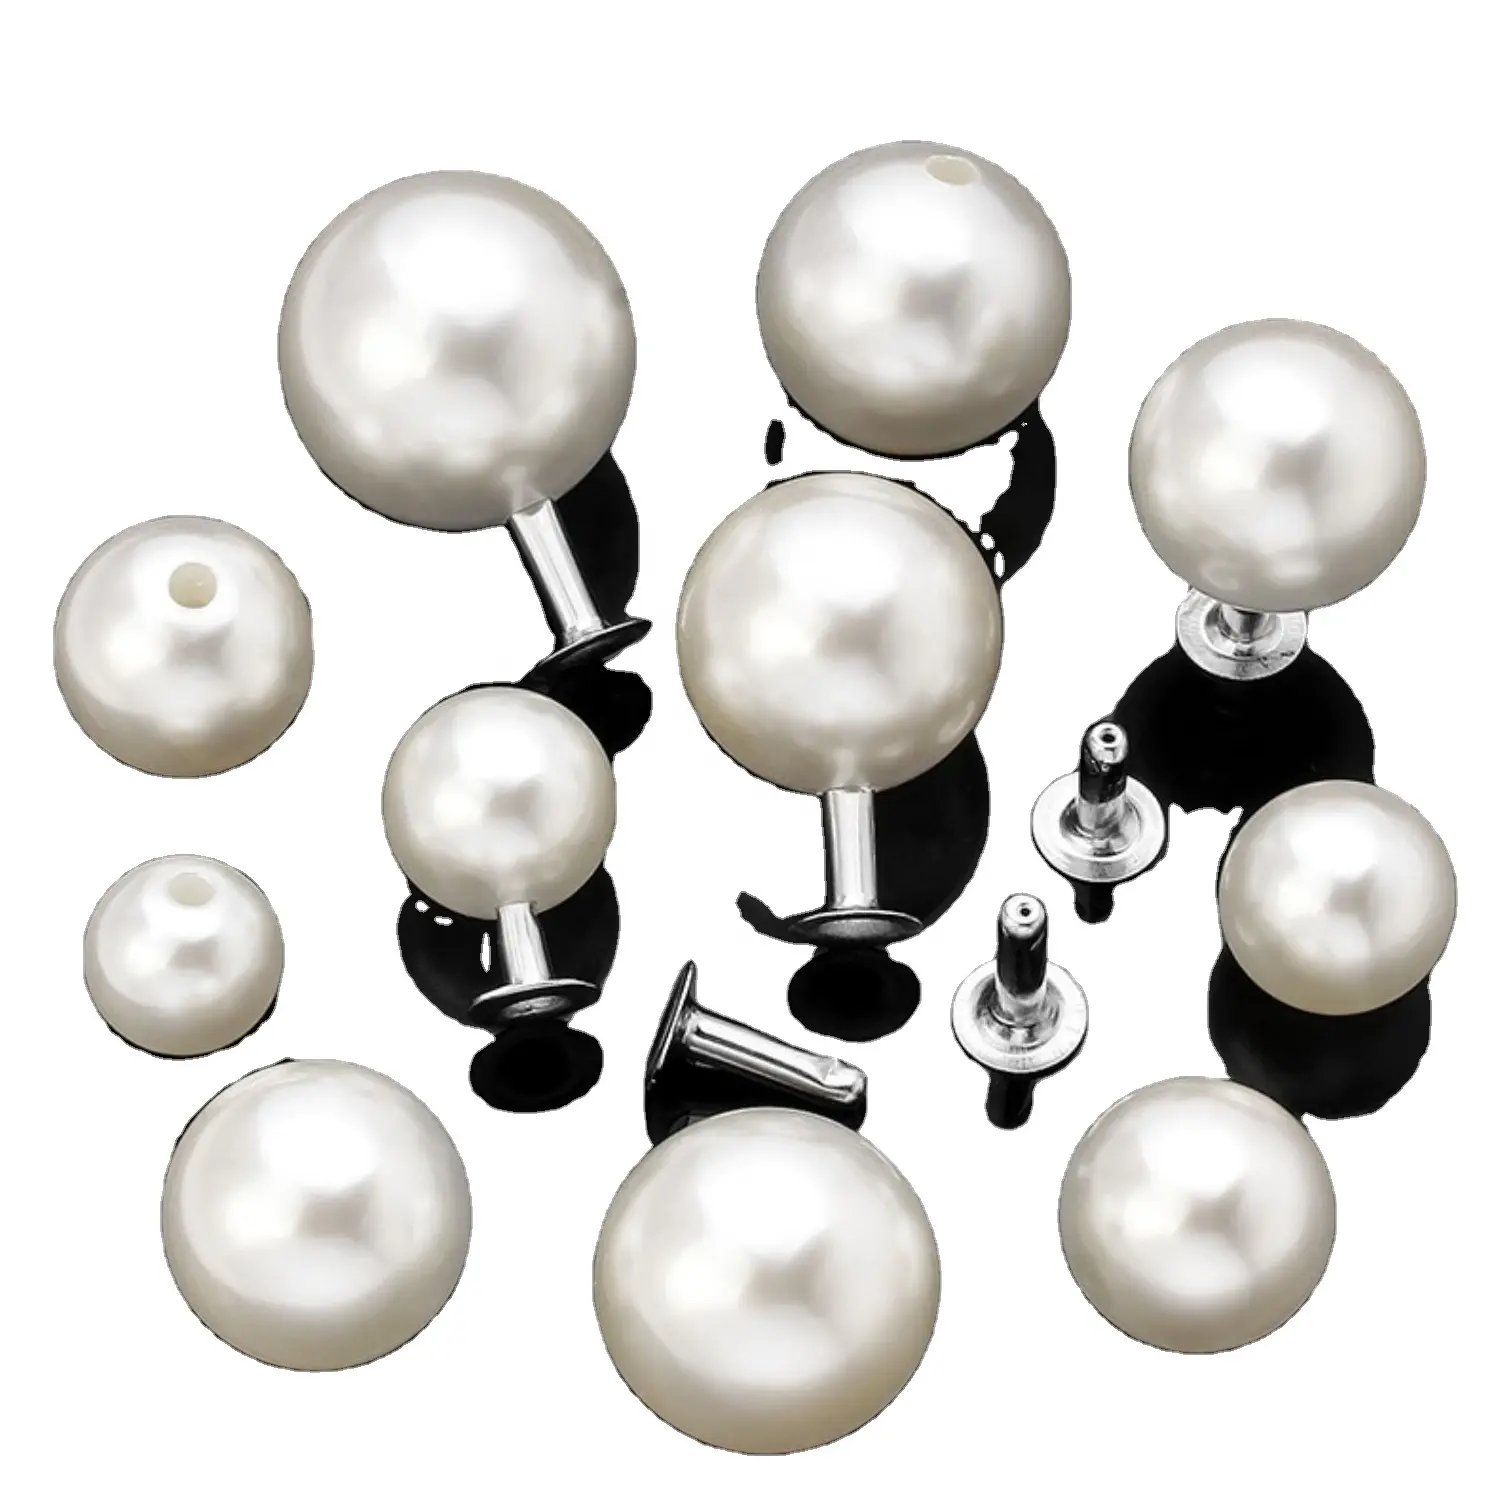 China fabricante muitas pérolas brancas pérolas de água doce botão pearl beads com rebite para casacos sacos sapatos